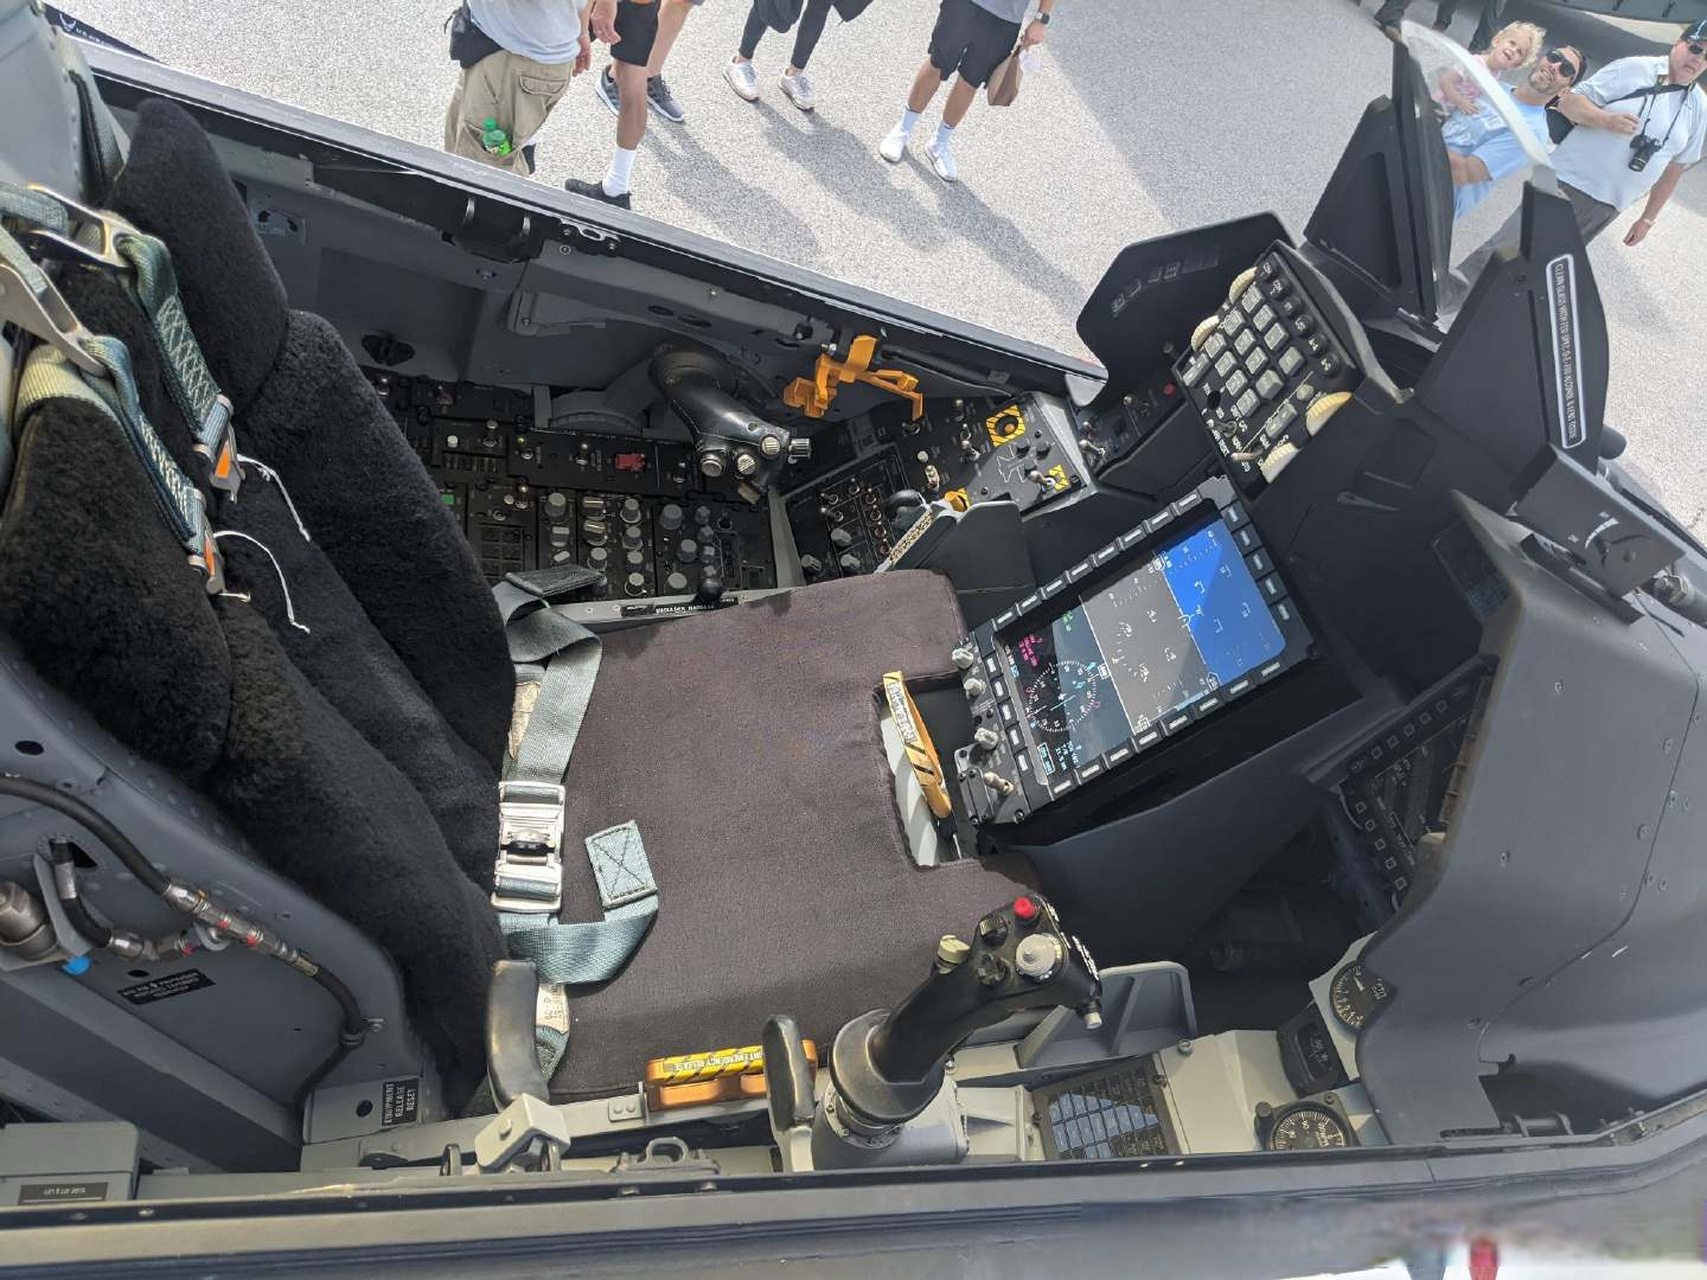 雷鸟f-16c block50的座舱,已经升级了f-16v的中央底部显示器(pcd)